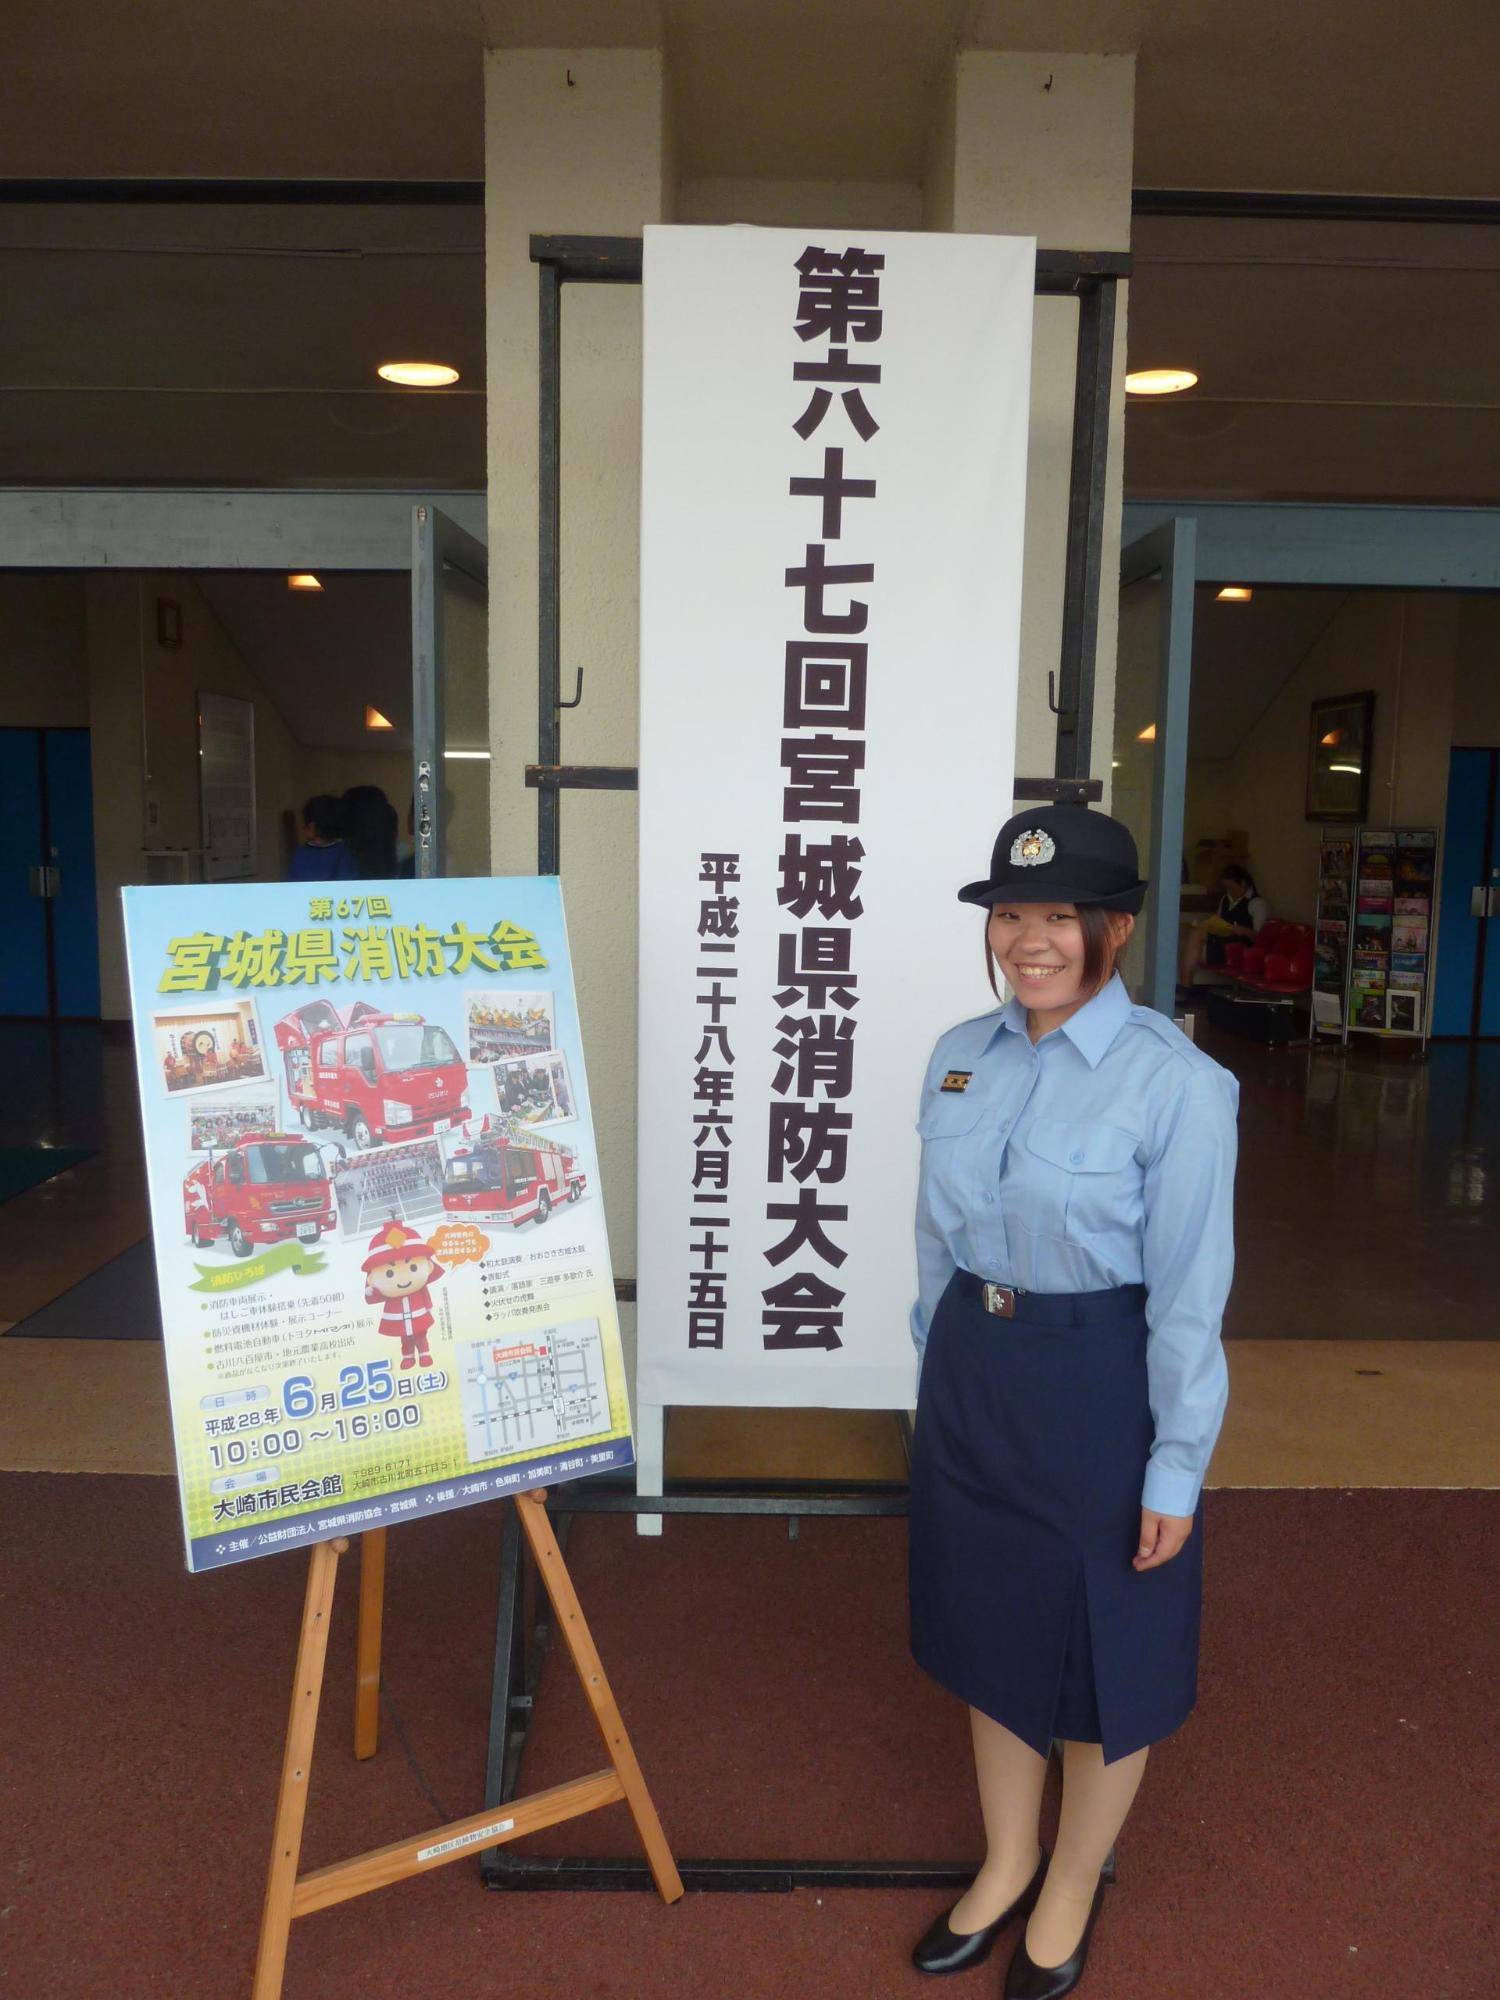 制服を着た女性消防団員が第六十七回宮城県消防大会と書かれた看板とポスターの前で笑顔で立っている写真